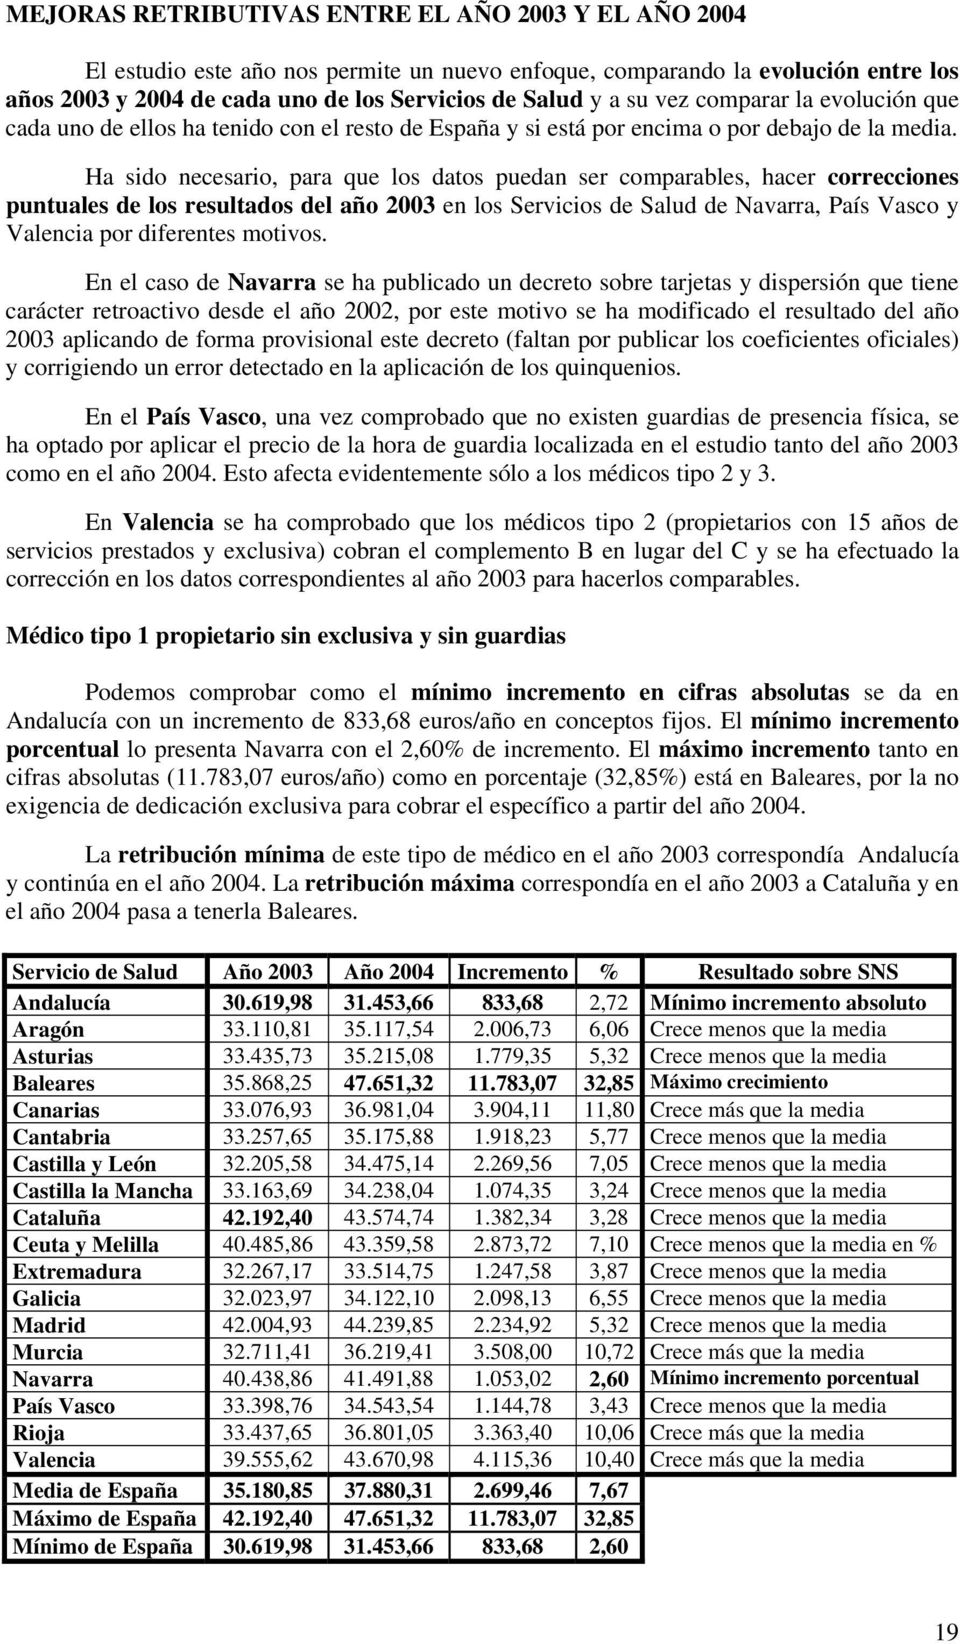 Ha sido necesario, para que los datos puedan ser comparables, hacer correcciones puntuales de los resultados del año 2003 en los Servicios de Salud de Navarra, País Vasco y Valencia por diferentes